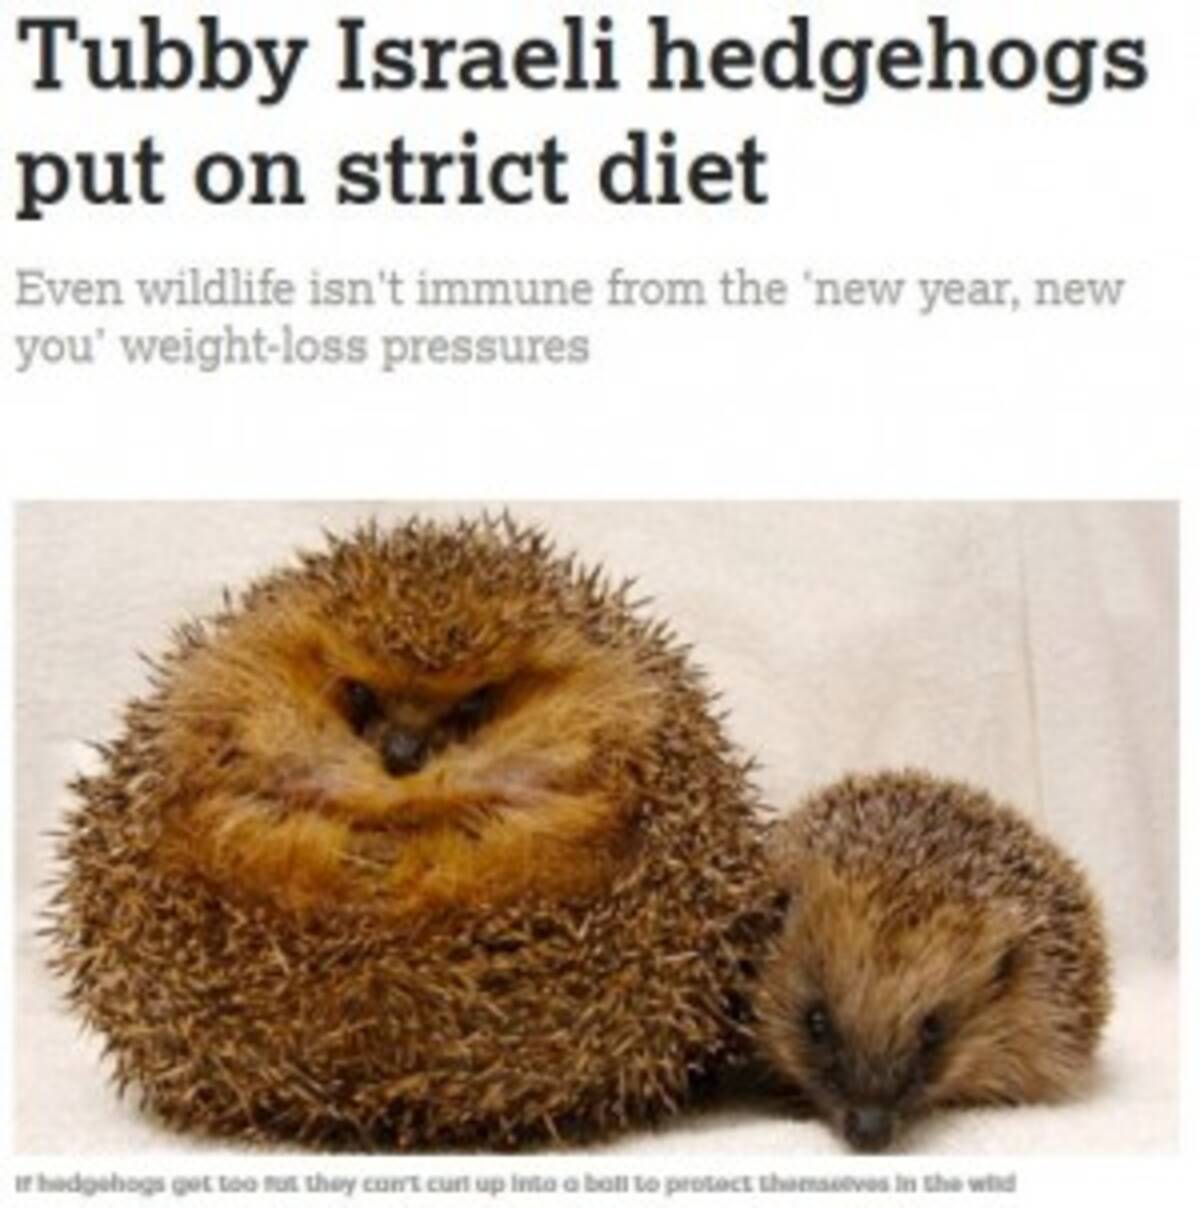 保護されたハリネズミ 肥満 のためダイエット決行 イスラエル 18年1月7日 エキサイトニュース